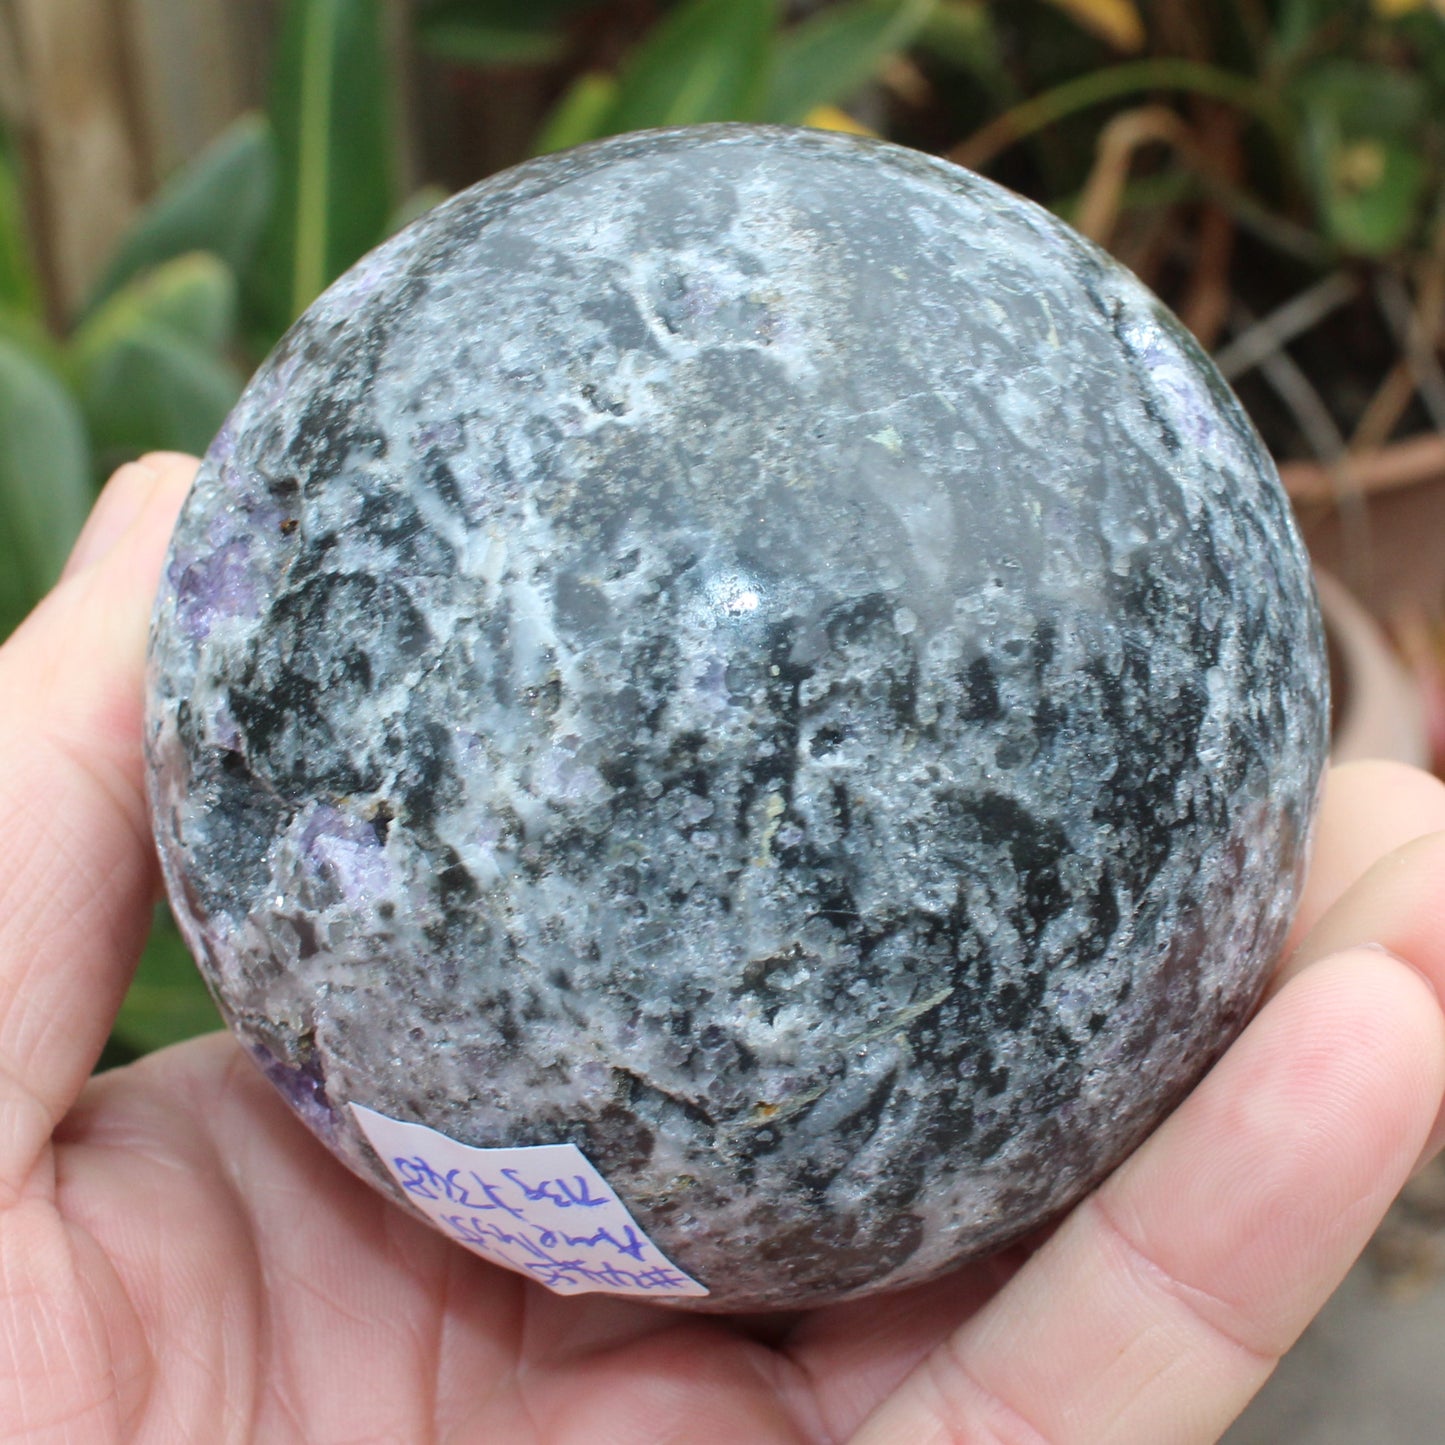 Amethyst Sphalerite sphere 713g